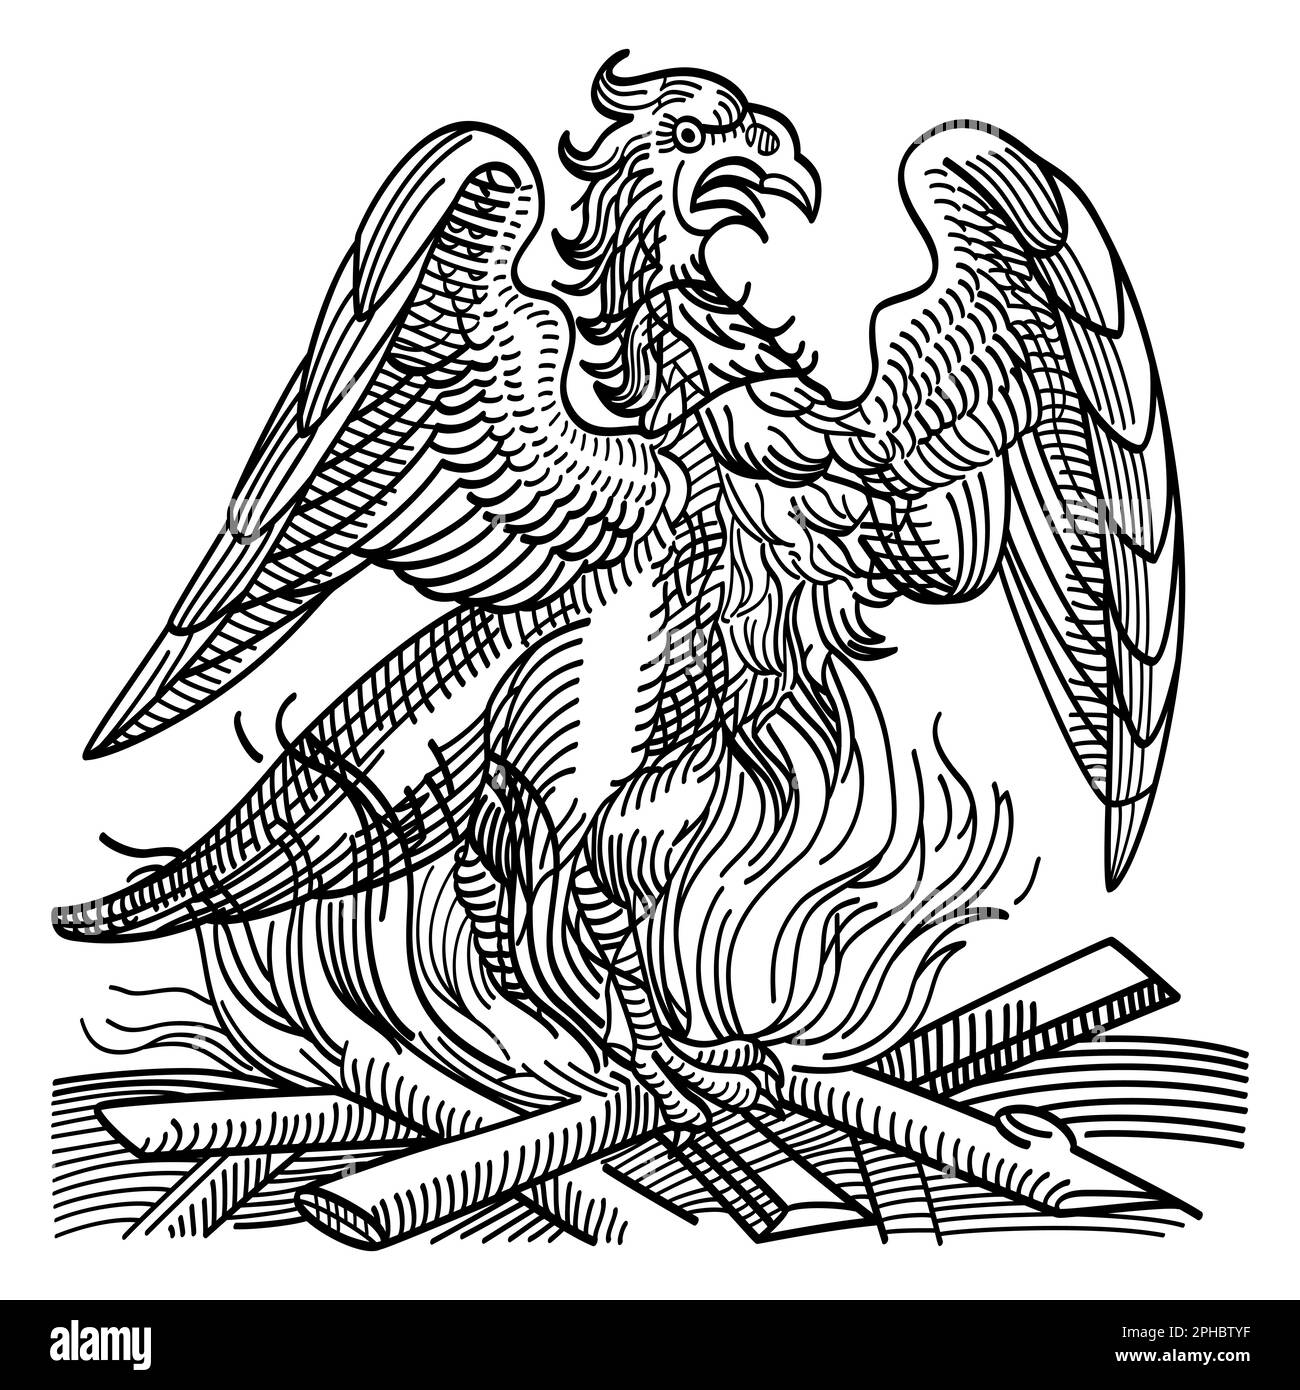 Una fenice ottiene nuova vita risorgendo dalle ceneri del suo predecessore. Uccello immortale e creatura dell'antica mitologia greca. Foto Stock